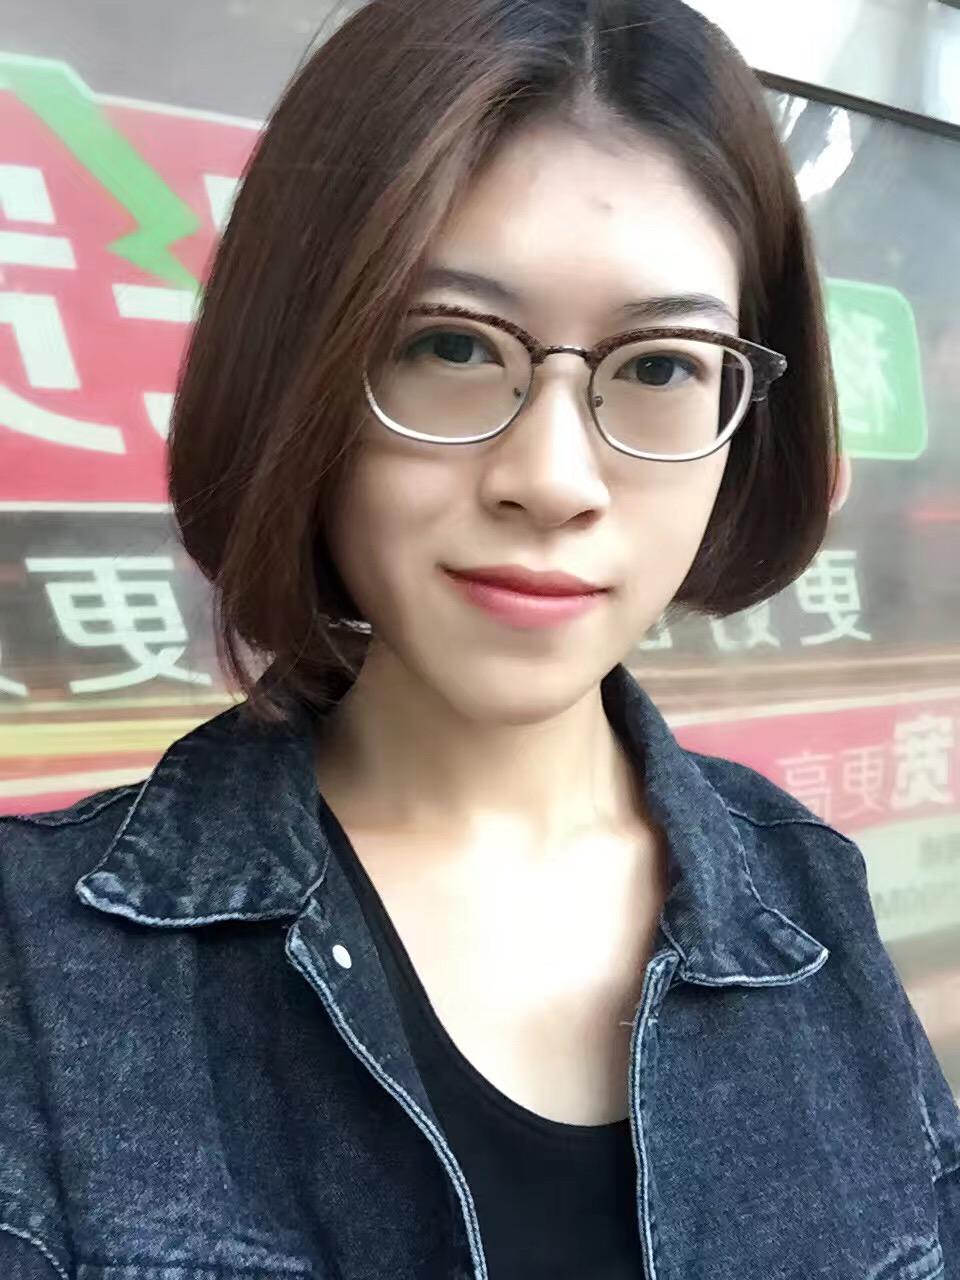 戴眼镜的女生适合哪种短发发型? 